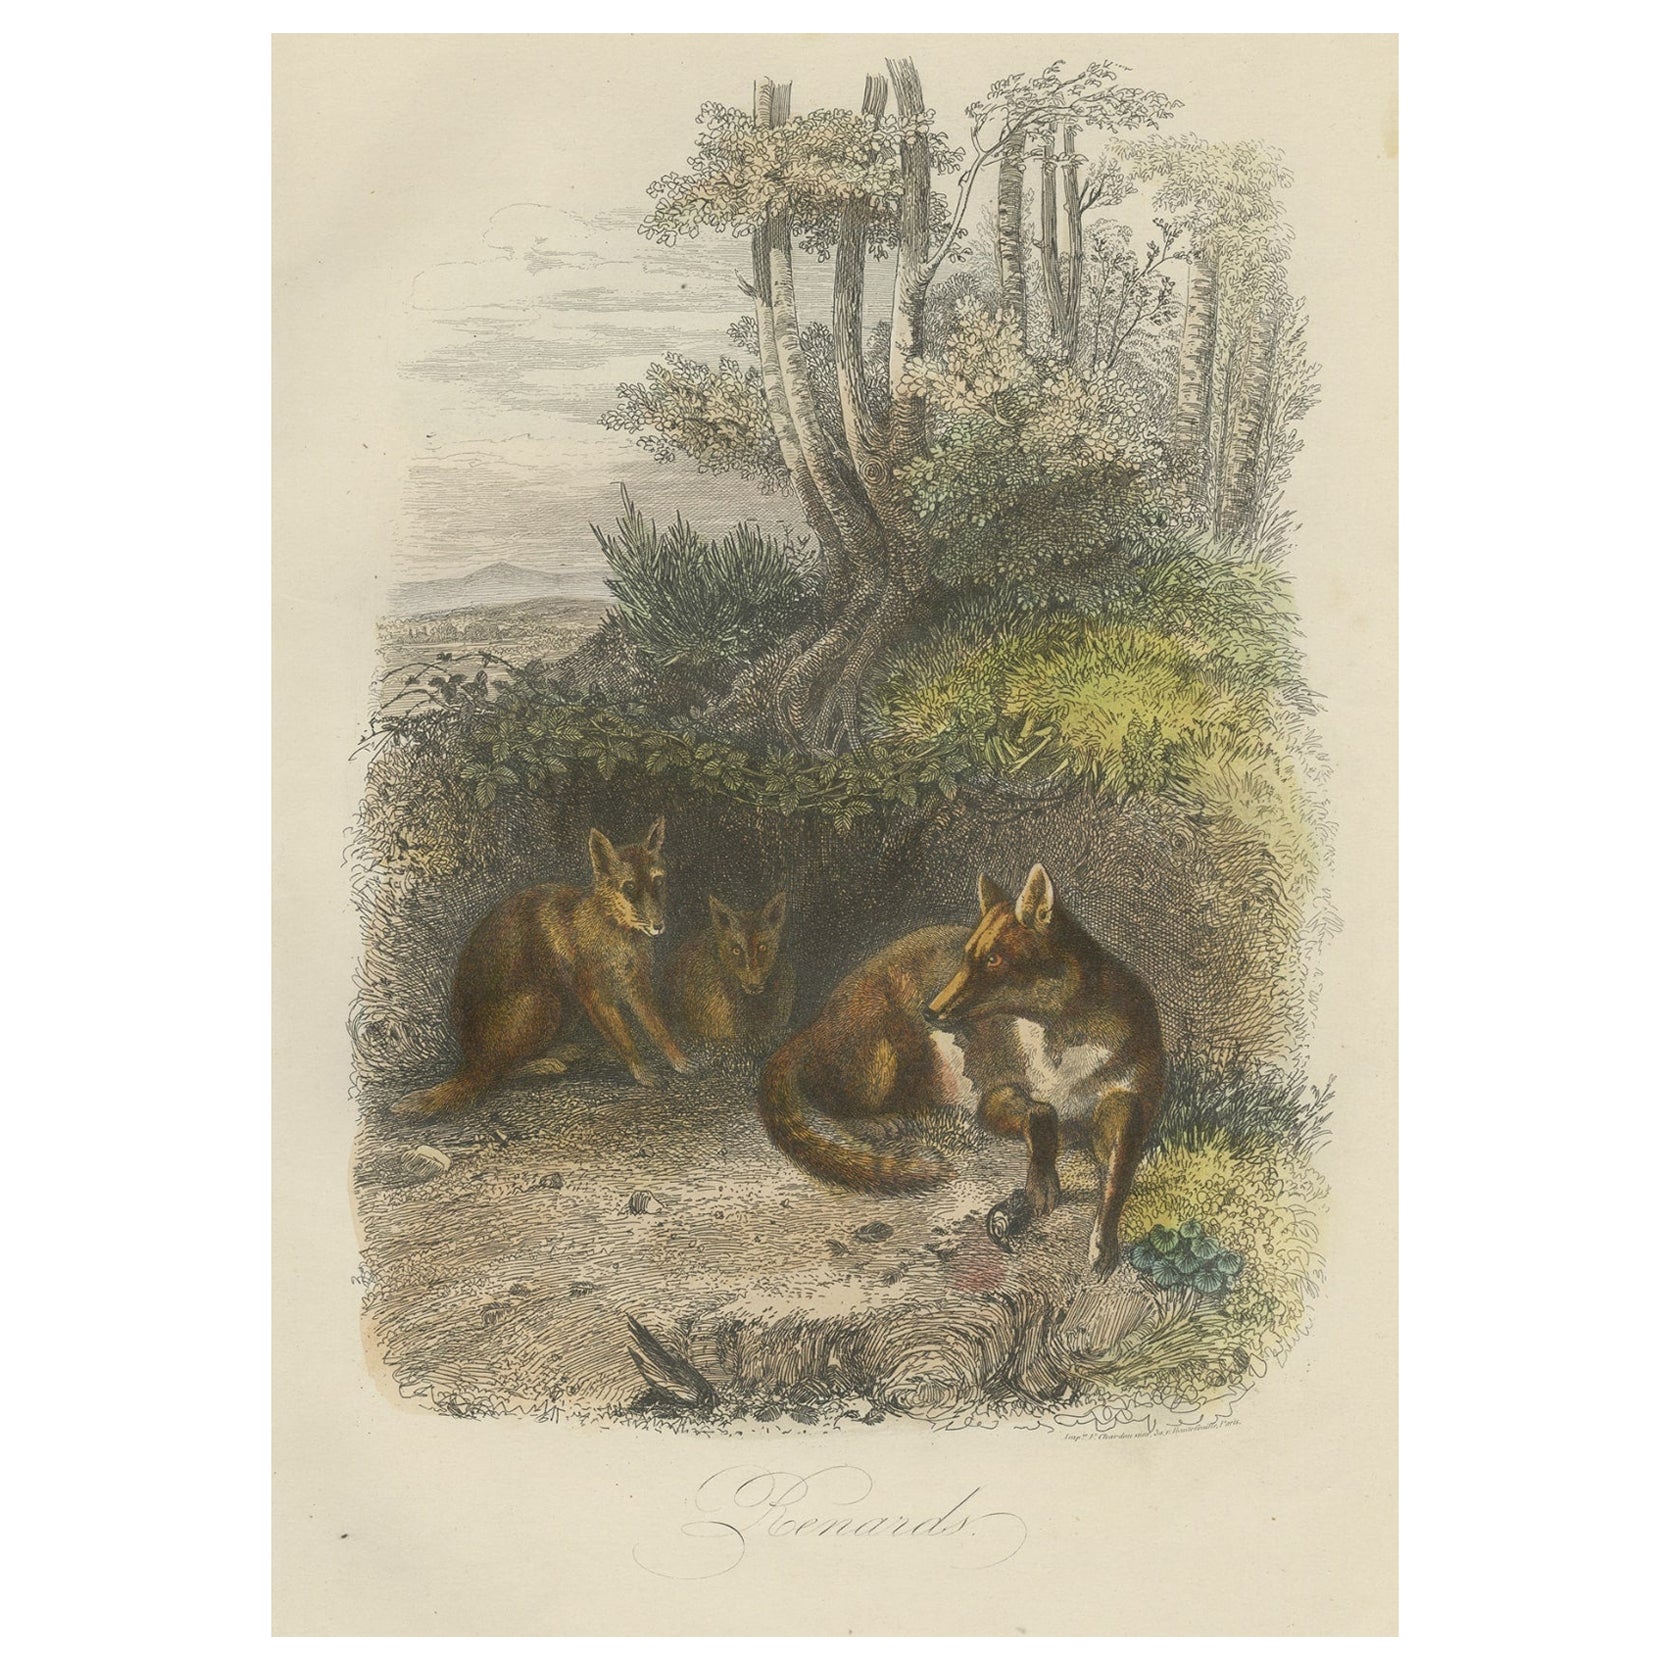 Original Antique Print of Foxes, 1854